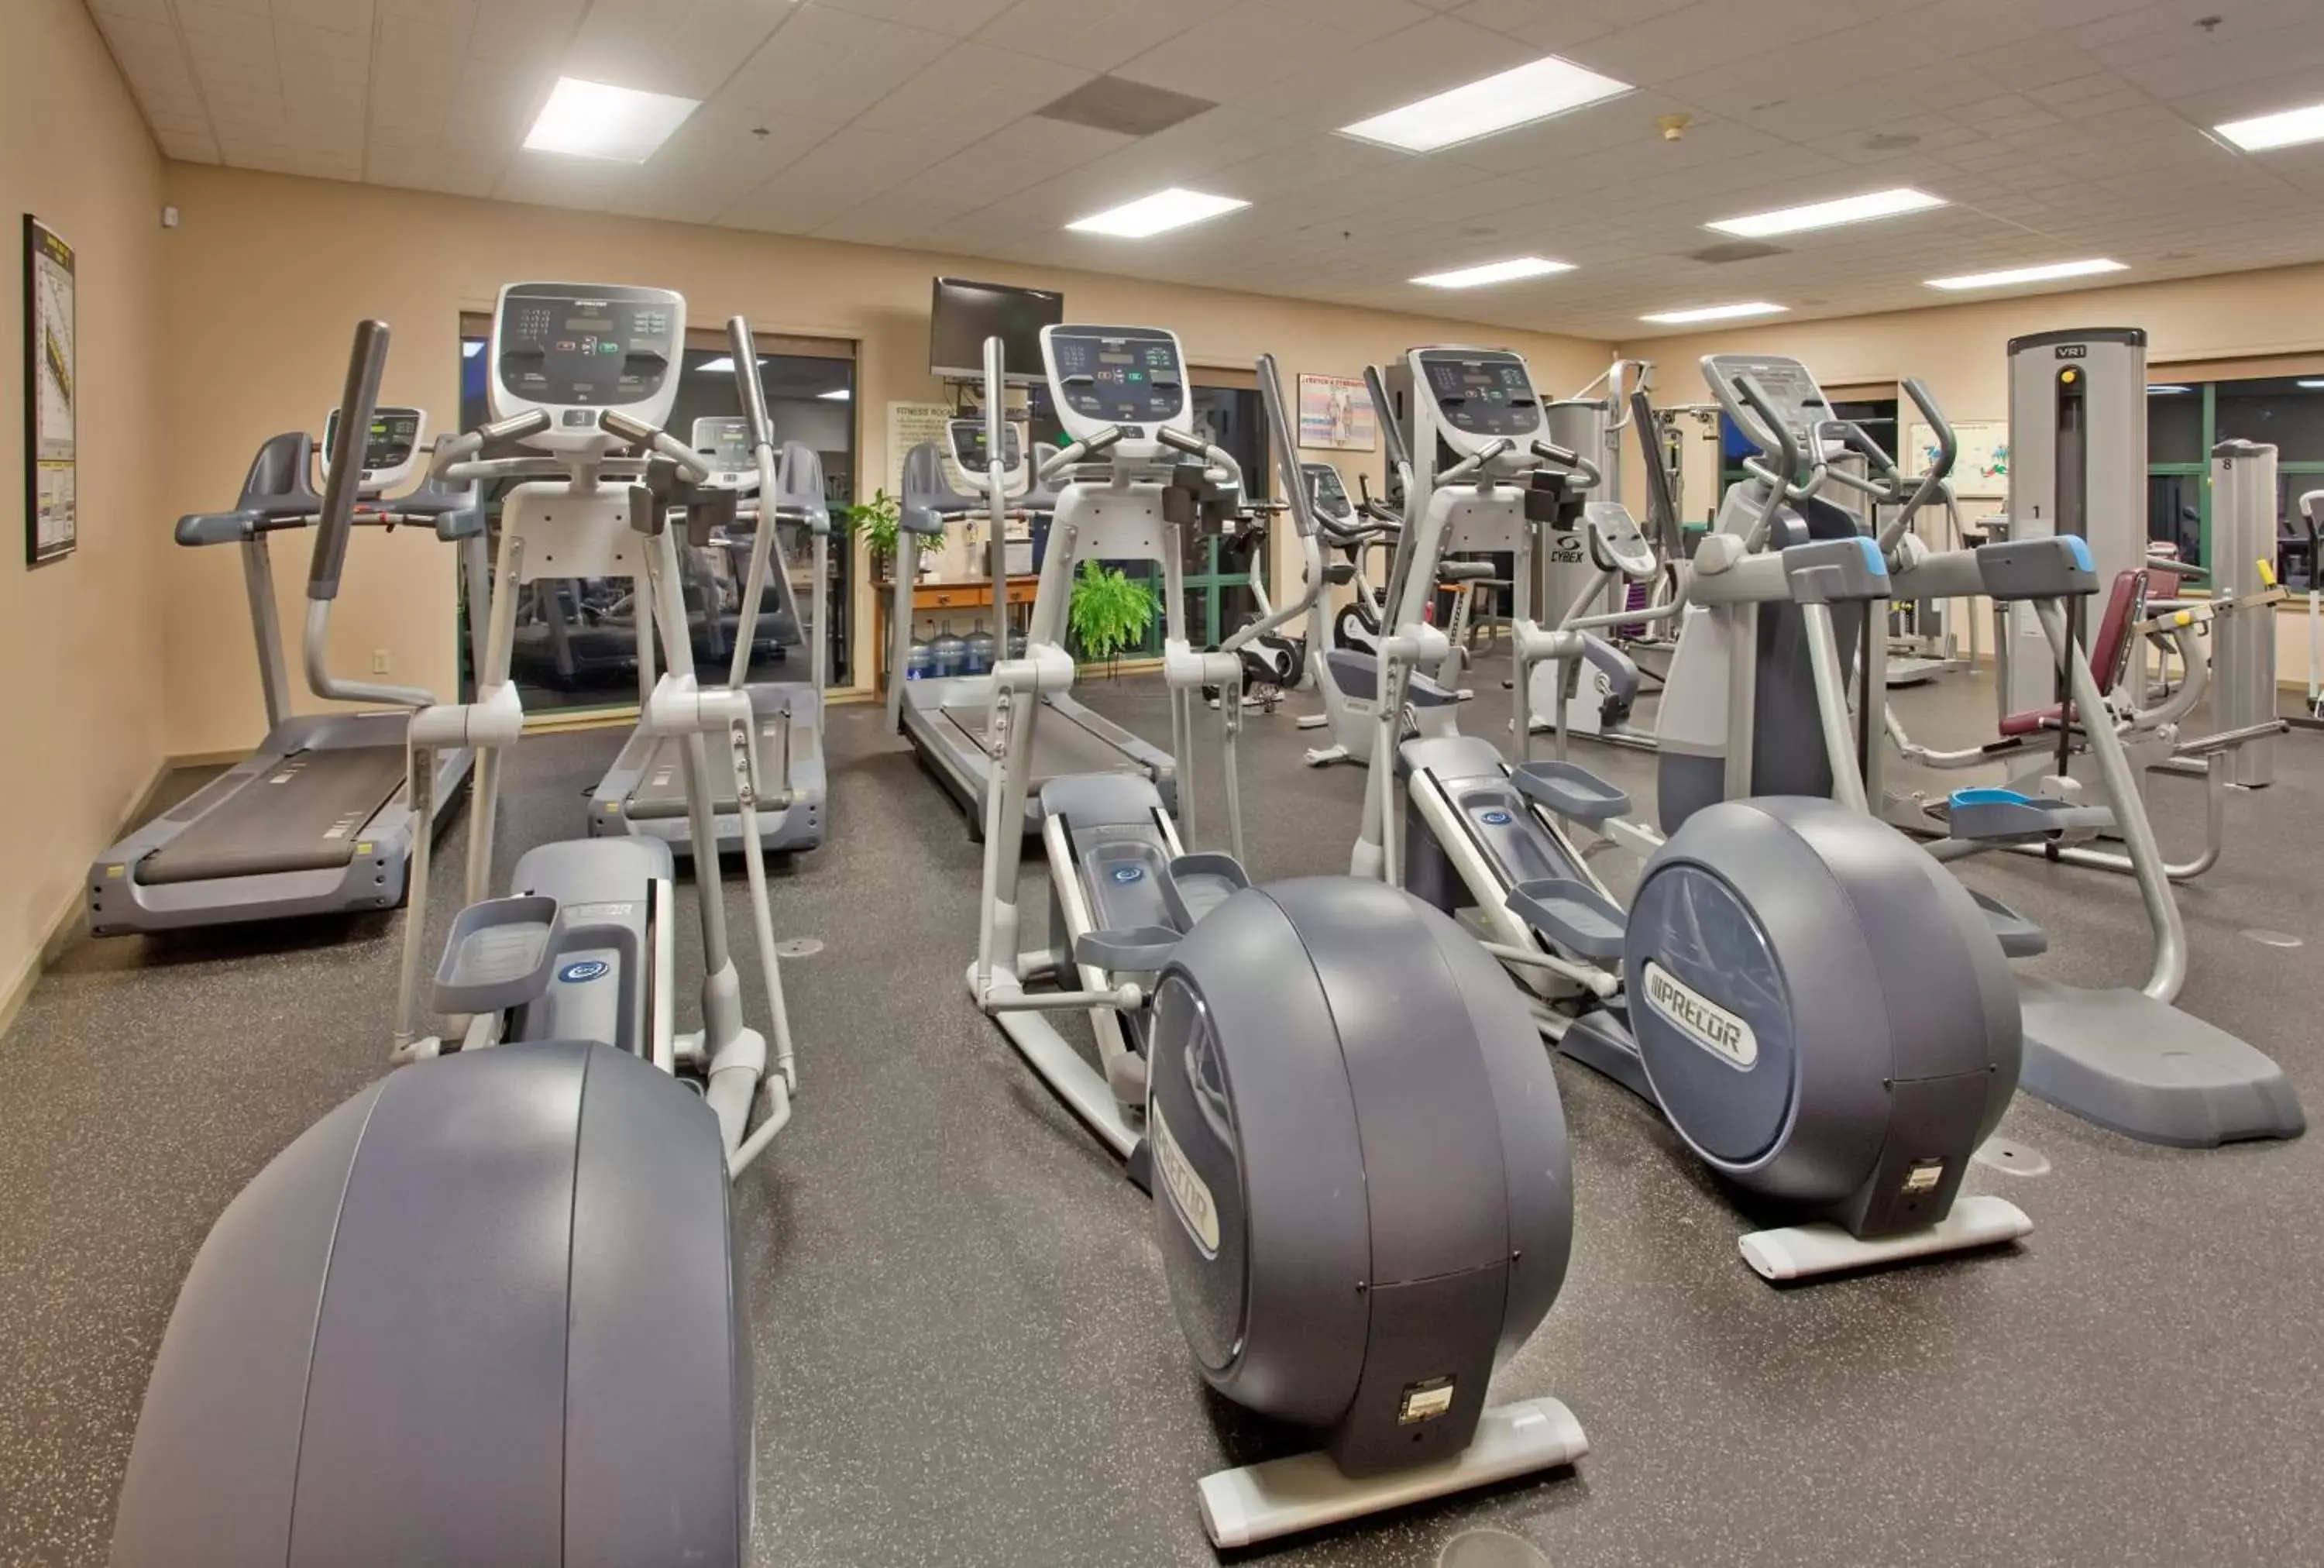 Fitness centre/facilities, Fitness Center/Facilities in Running Y Ranch Resort